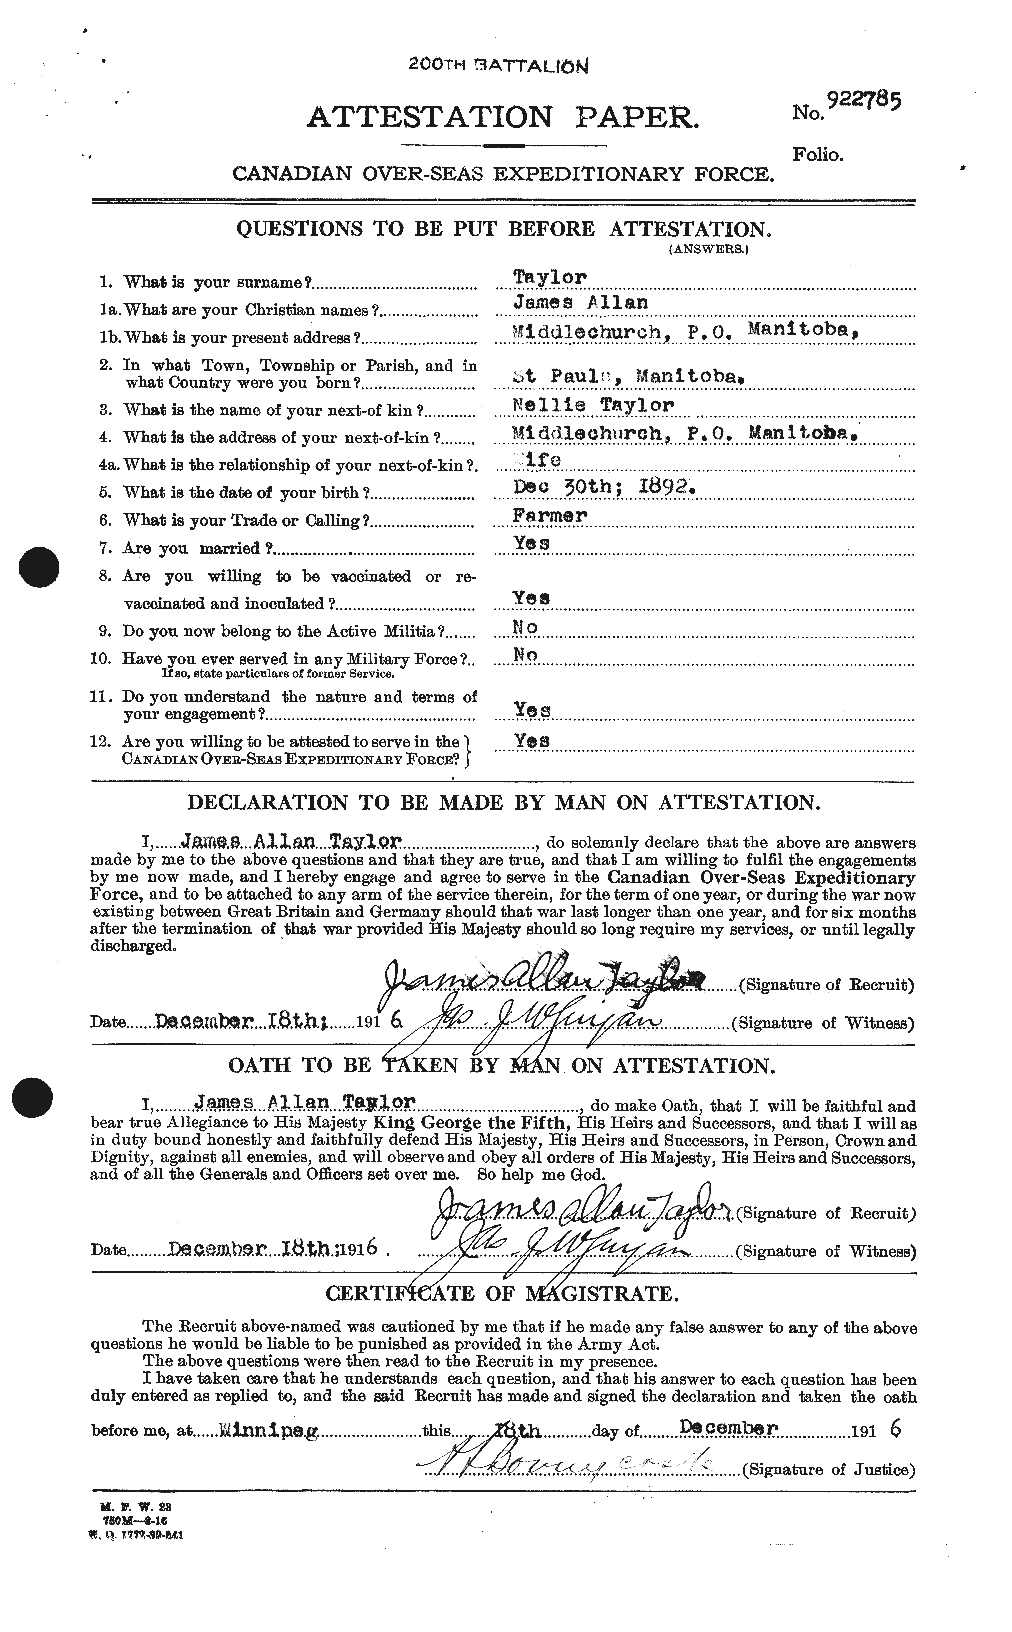 Dossiers du Personnel de la Première Guerre mondiale - CEC 626902a